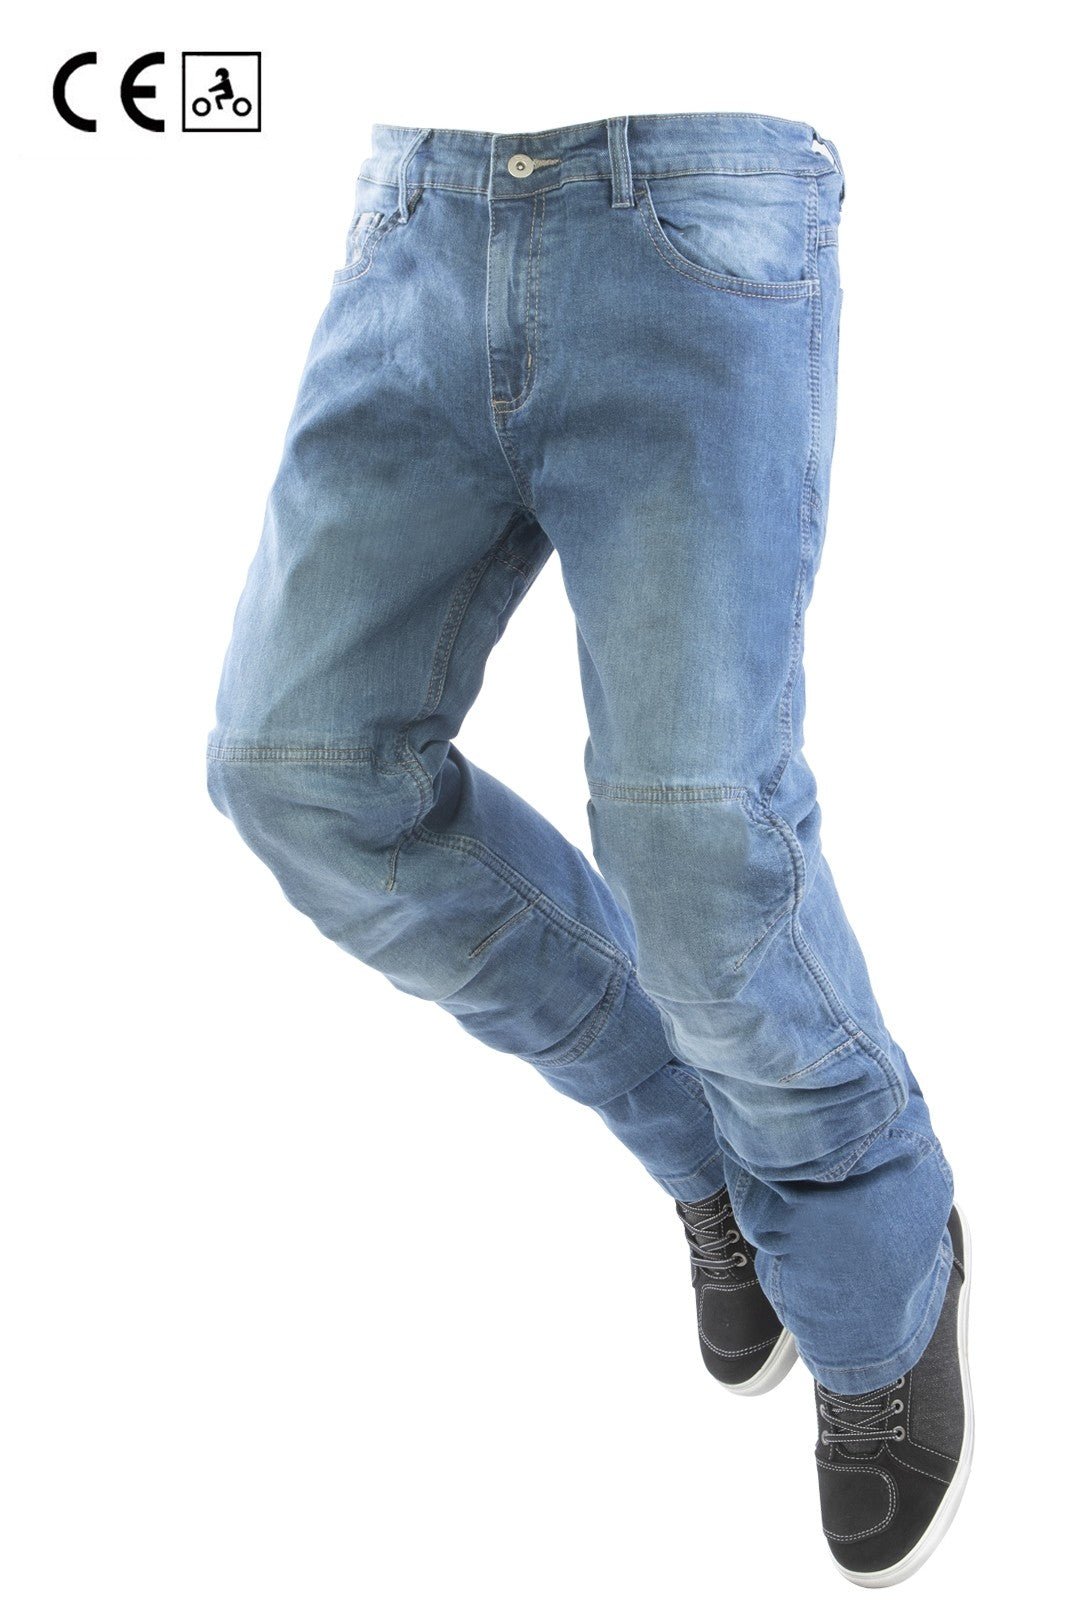 Jeans moto OJ STORM uomo elasticizzato, impermeabile, aramidica e protezioni - OnTheRoad.shop - OJ